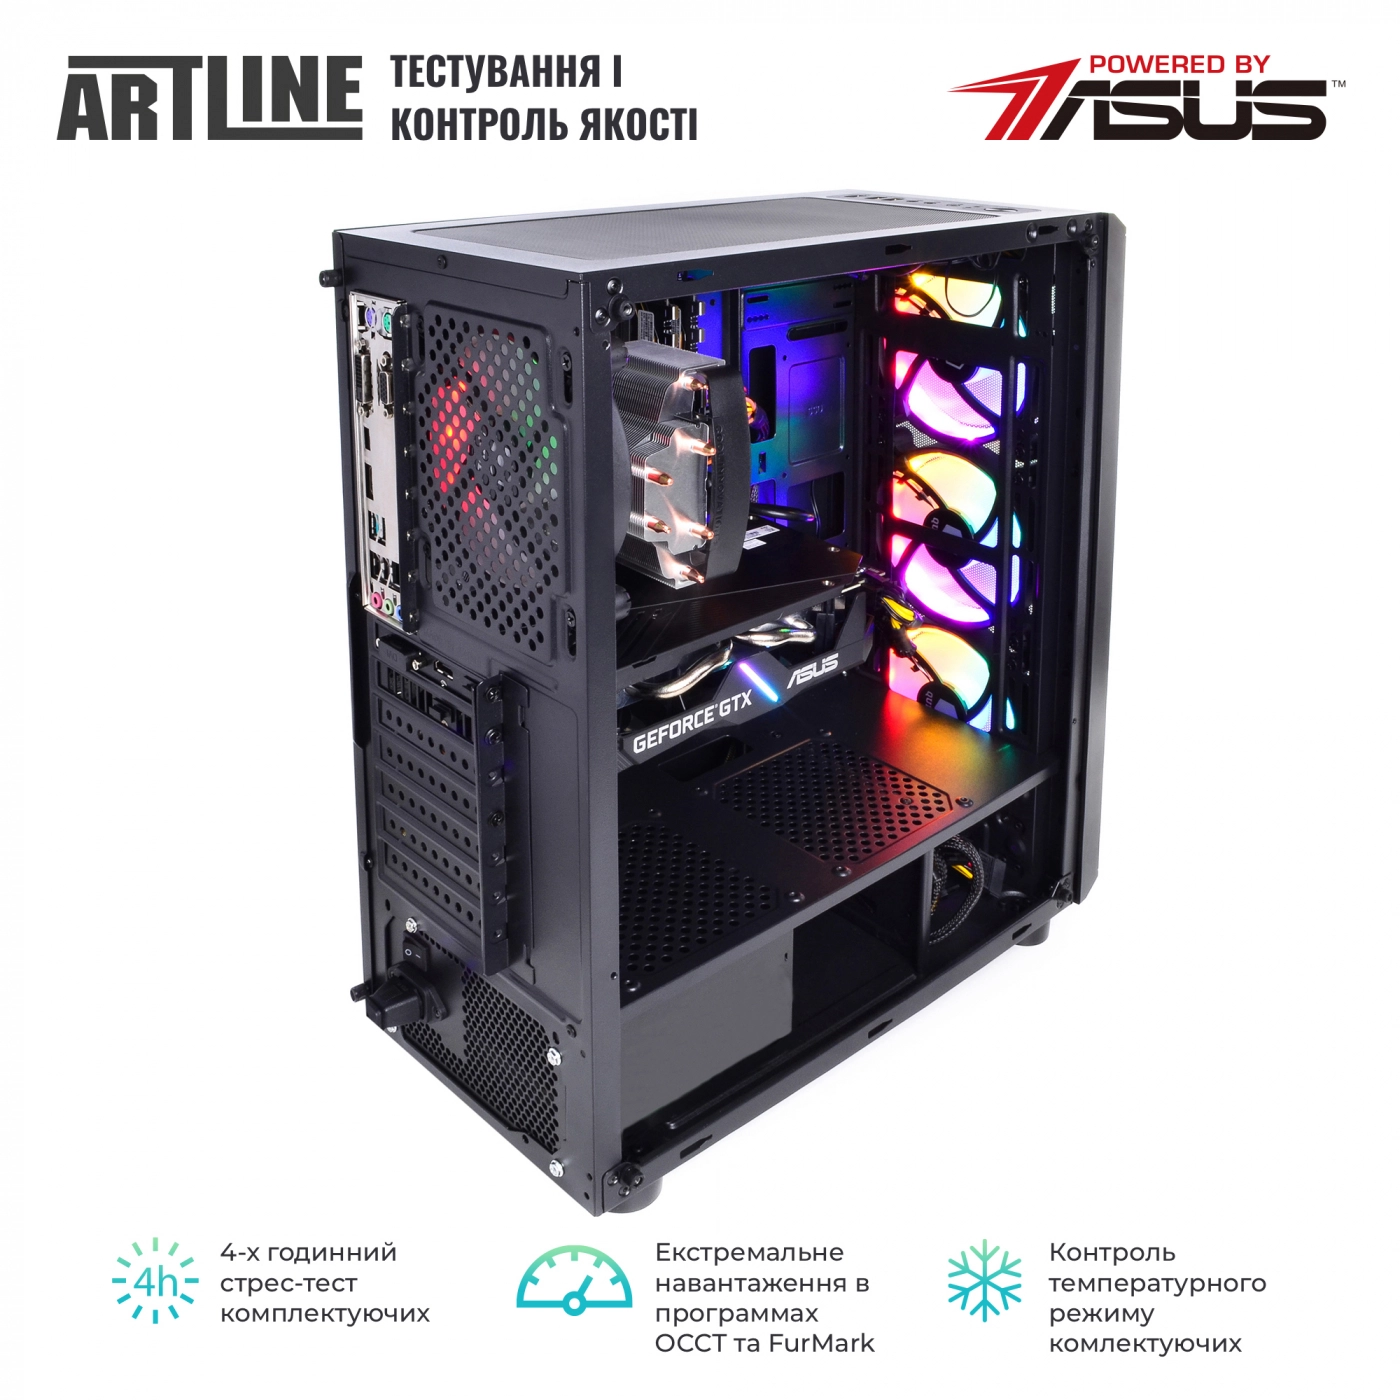 Купить Компьютер ARTLINE Gaming X74v15 - фото 8